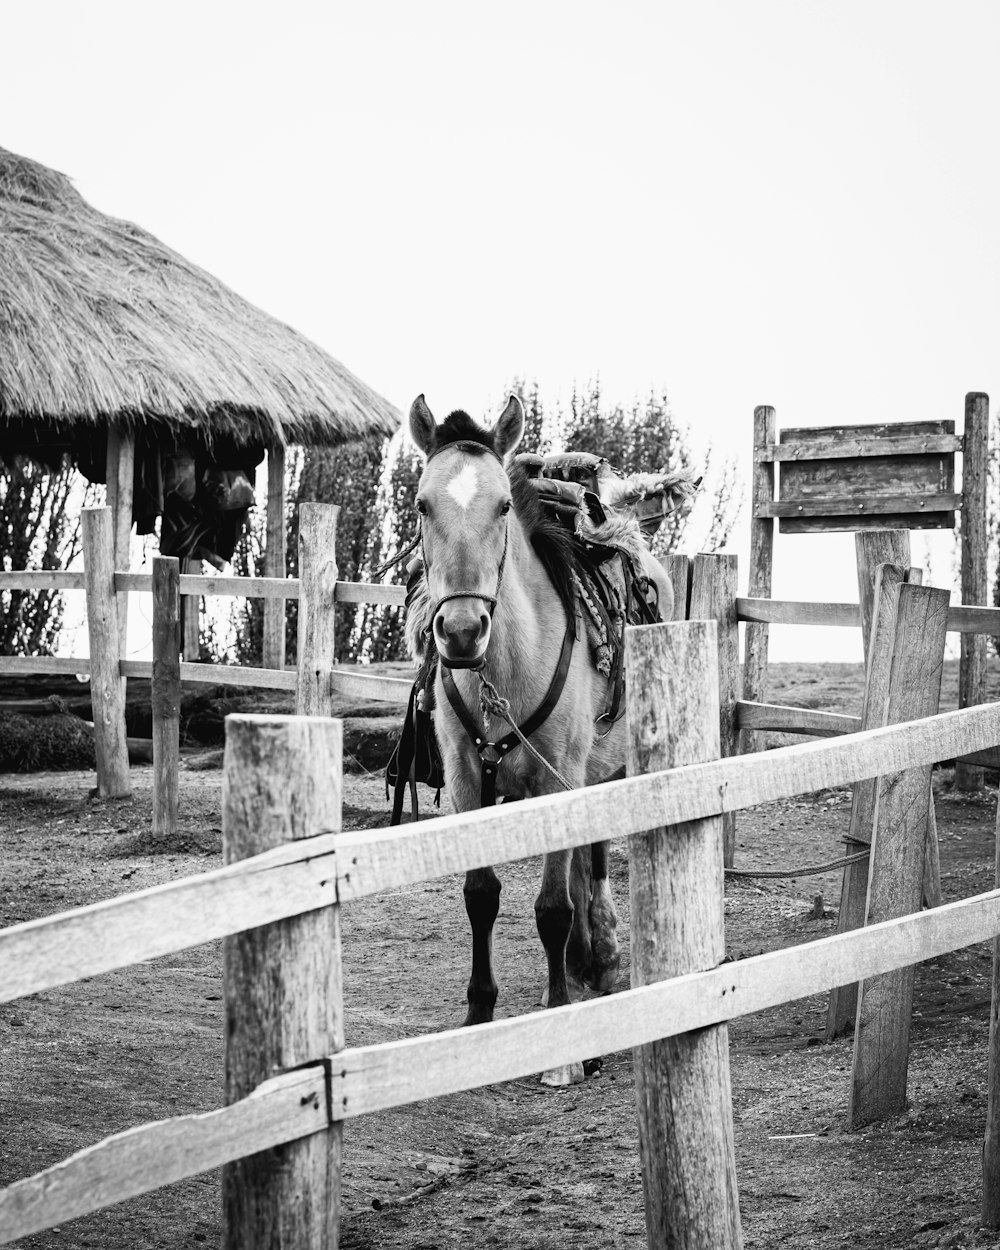 木製の柵の上の2頭の馬のグレースケール写真